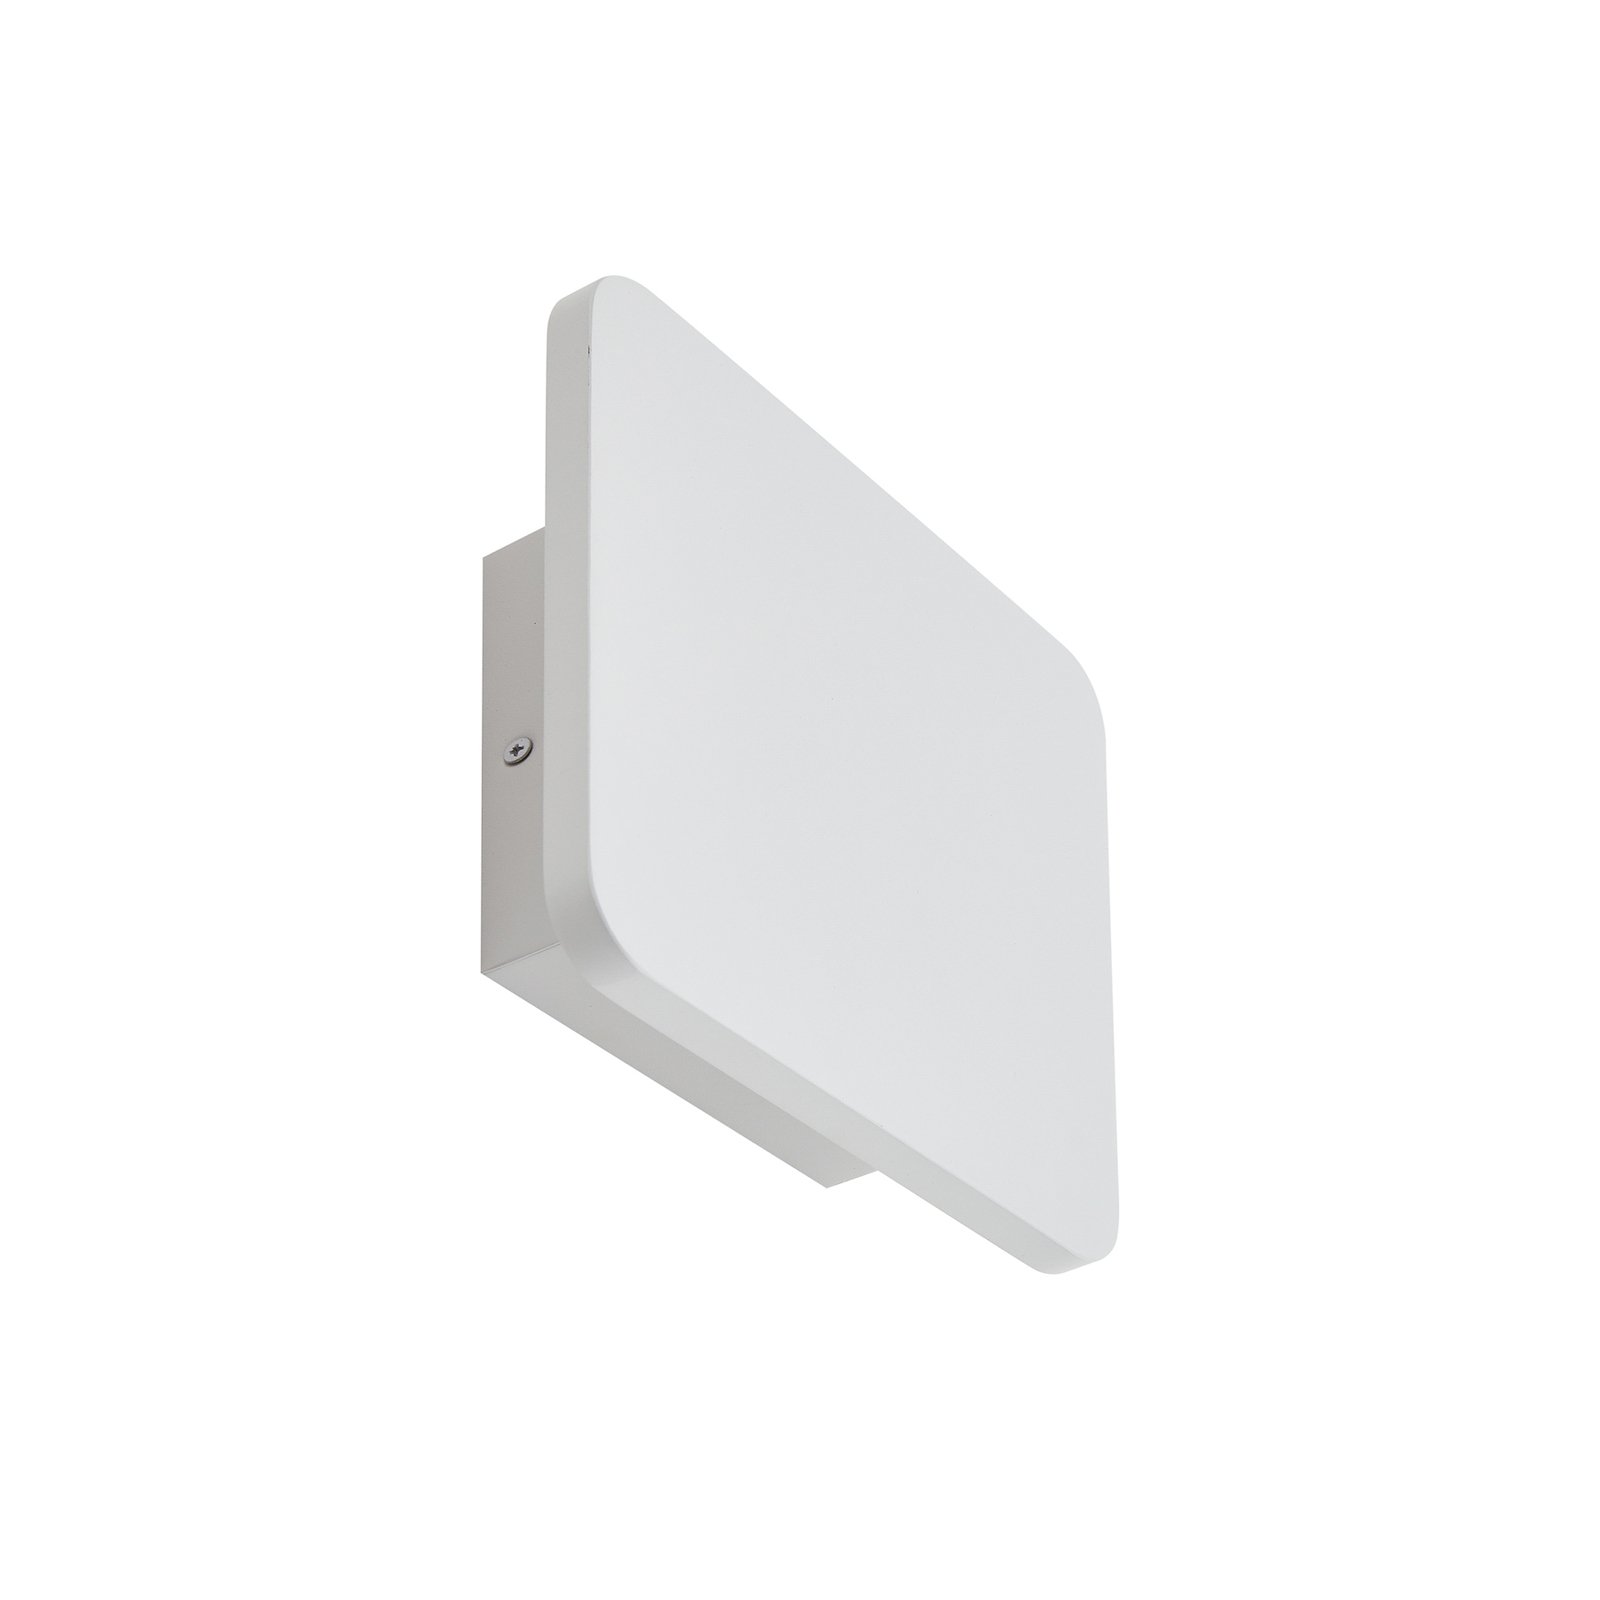 Lucande LED-Wandleuchte Elrik, weiß, 22 cm hoch, Metall